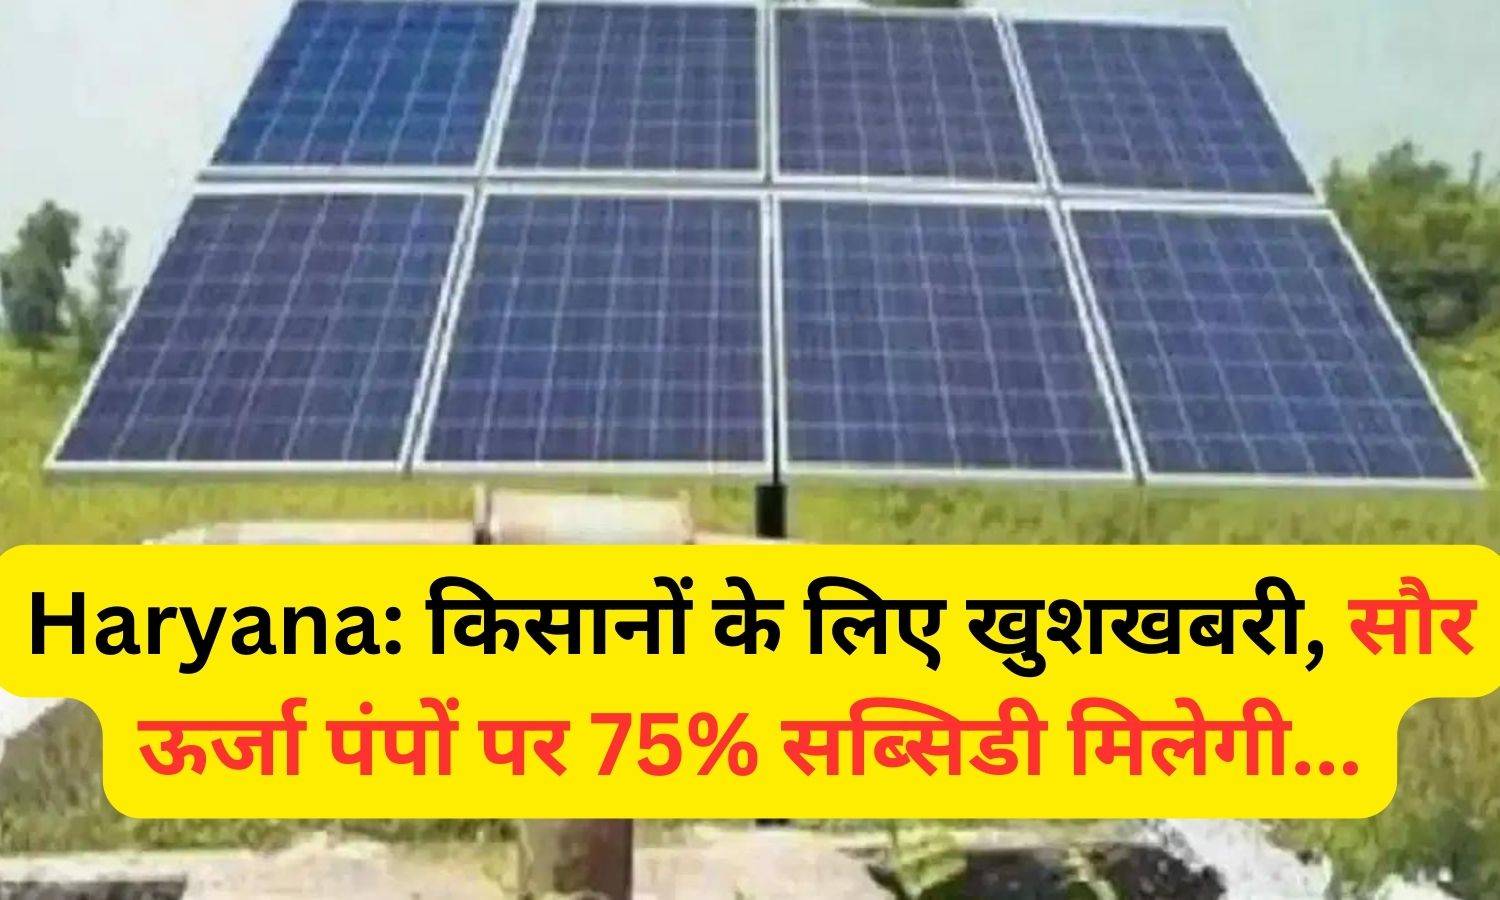 Haryana: किसानों के लिए खुशखबरी, सौर ऊर्जा पंपों पर 75% सब्सिडी मिलेगी...